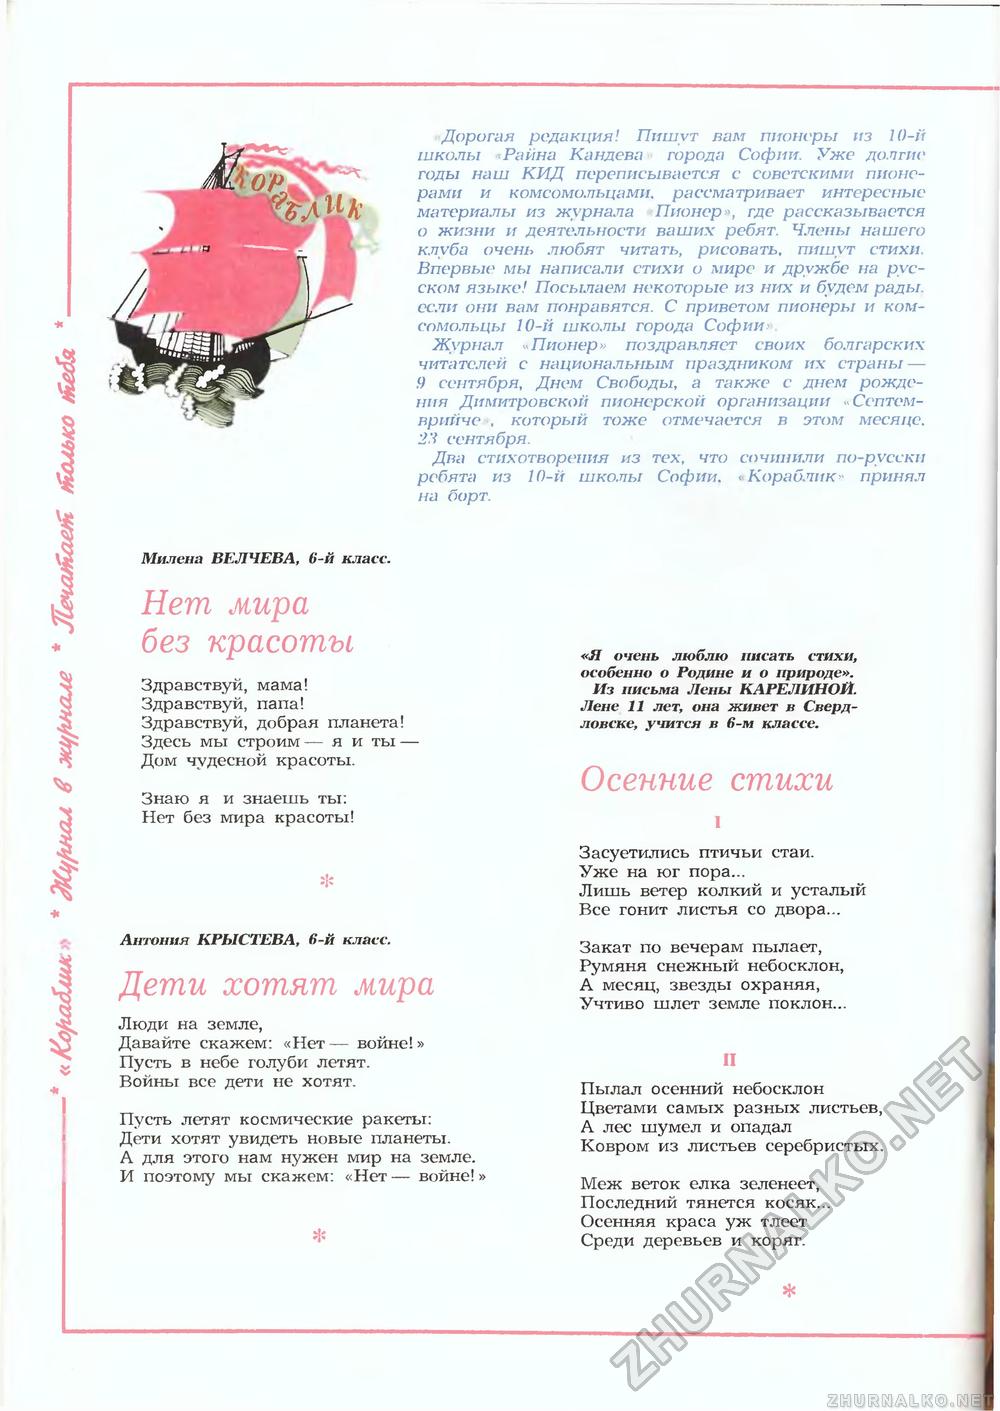  1987-09,  40